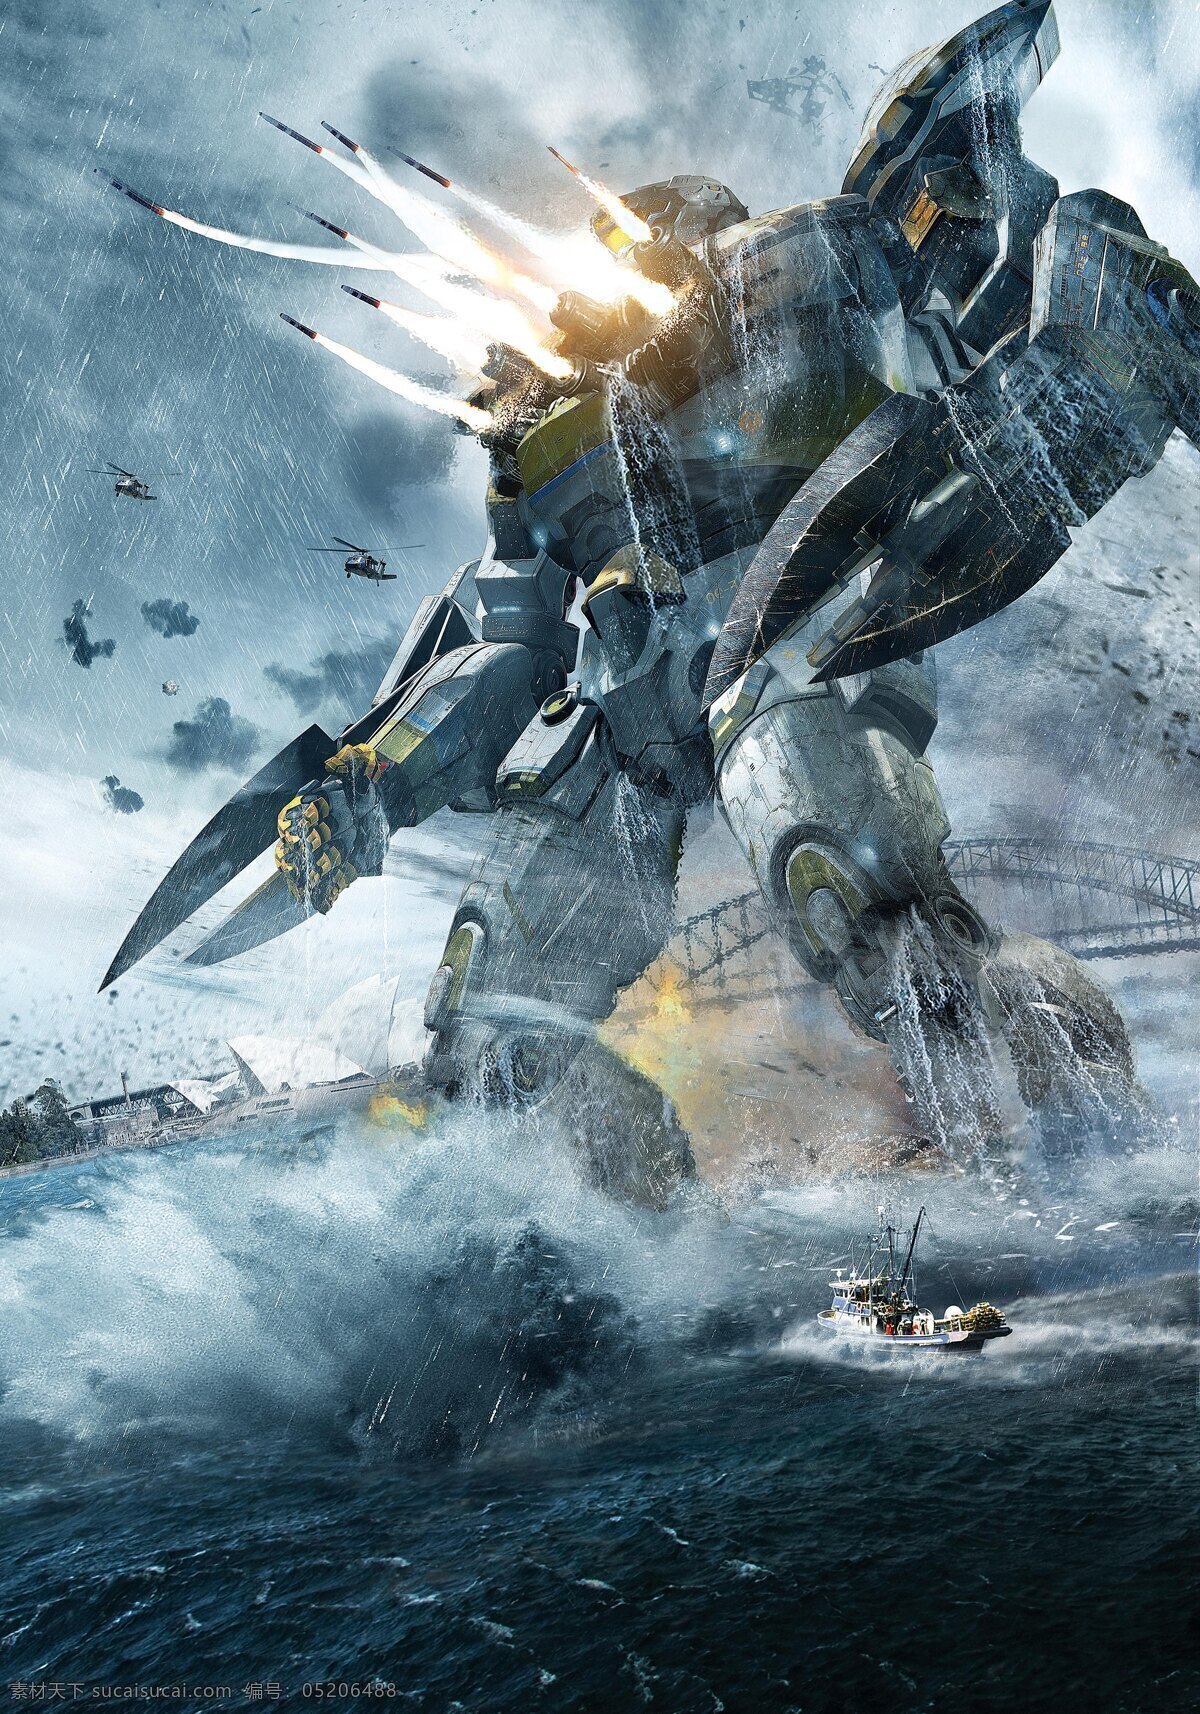 环太平洋 pacific rim 尤里卡突袭者 striker eureka 科幻 科幻电影 机械 战甲 机甲战士 机器人 电影海报 科技 环 太平洋 机 甲 战士 3d设计